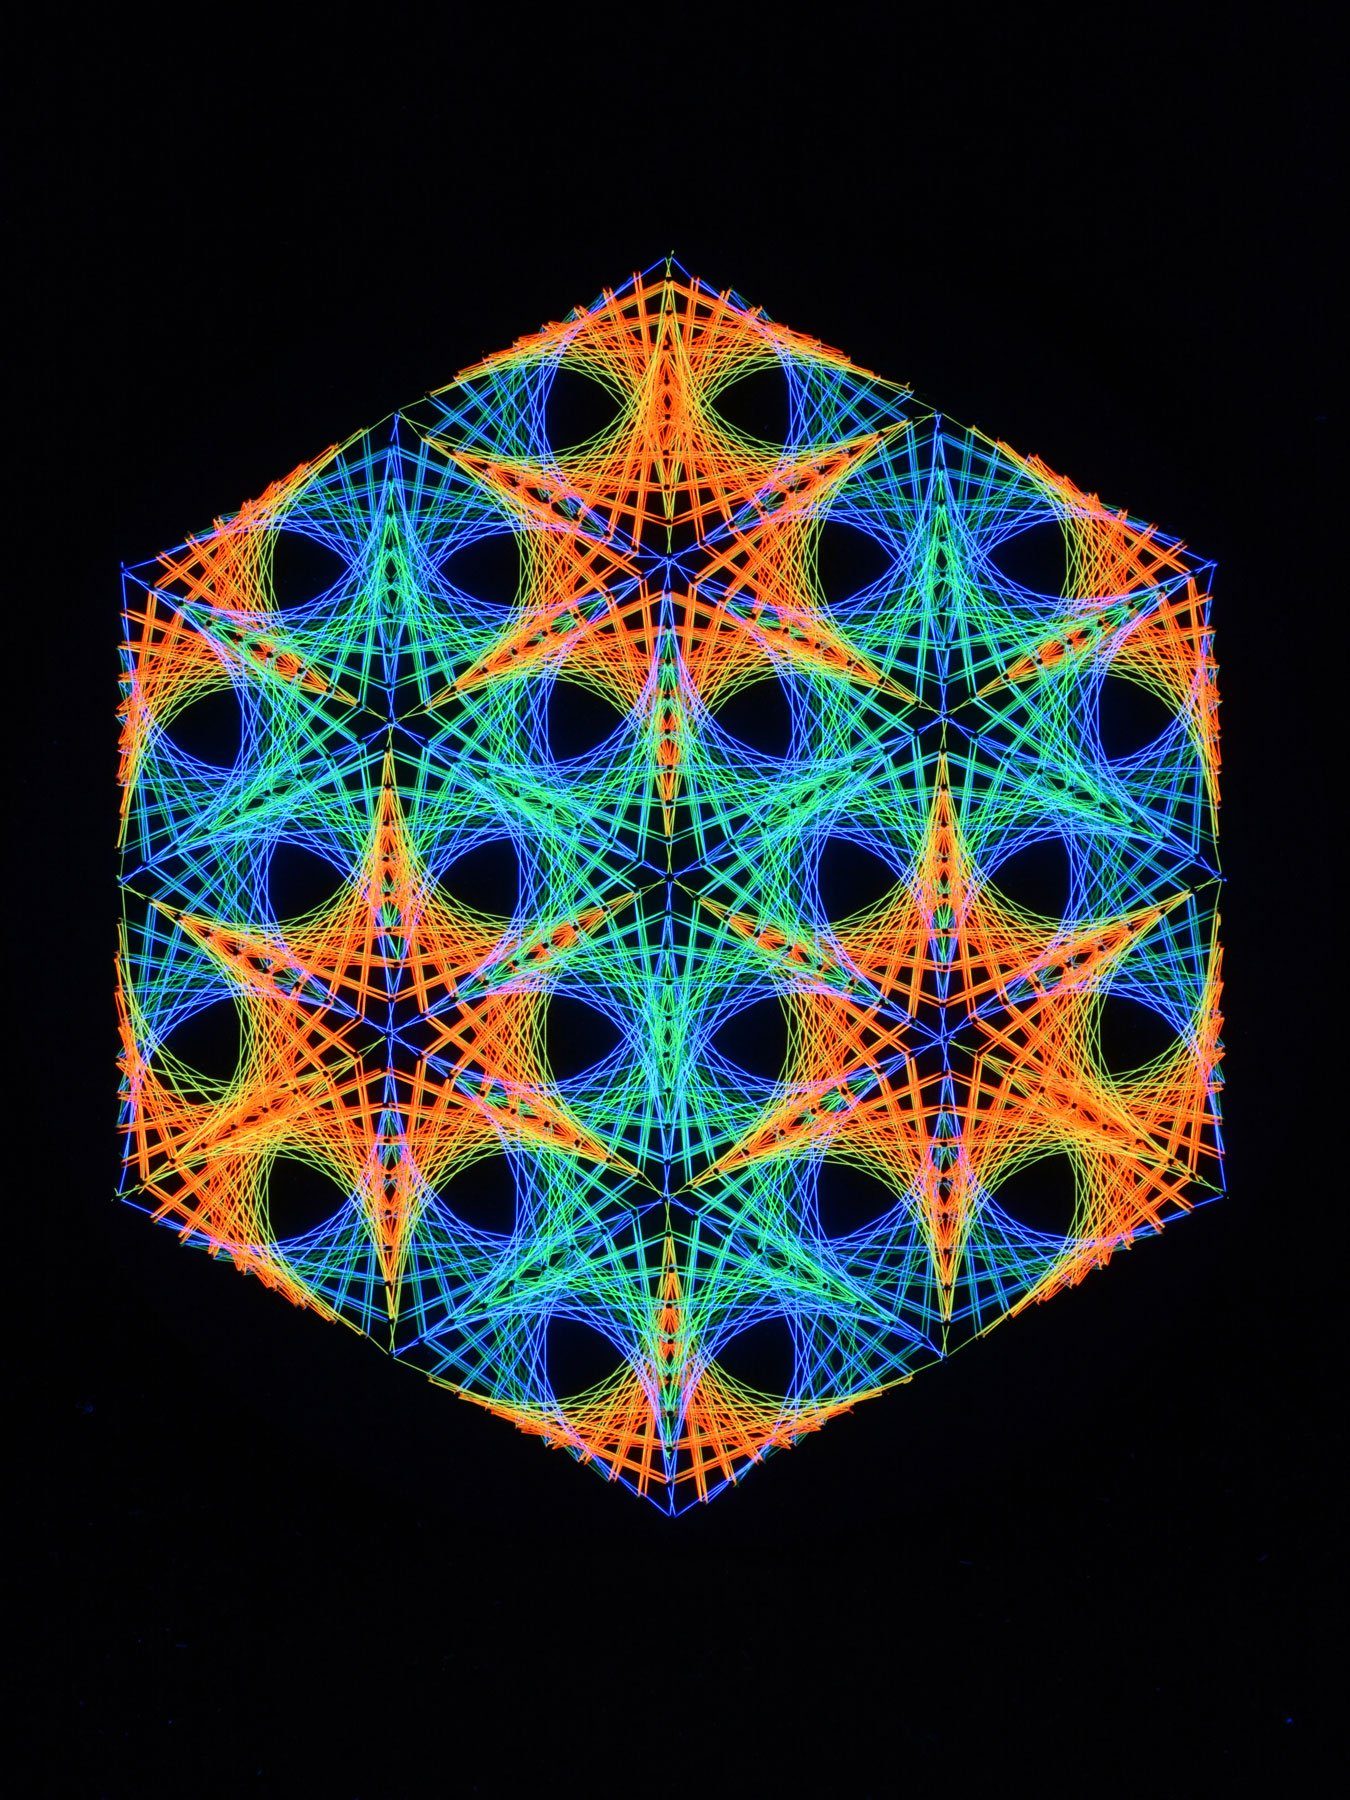 PSYWORK Dekoobjekt Schwarzlicht 2D UV-aktiv, Kreis leuchtet unter Reef", Fadendeko 40cm, Schwarzlicht StringArt "Fluo Coral